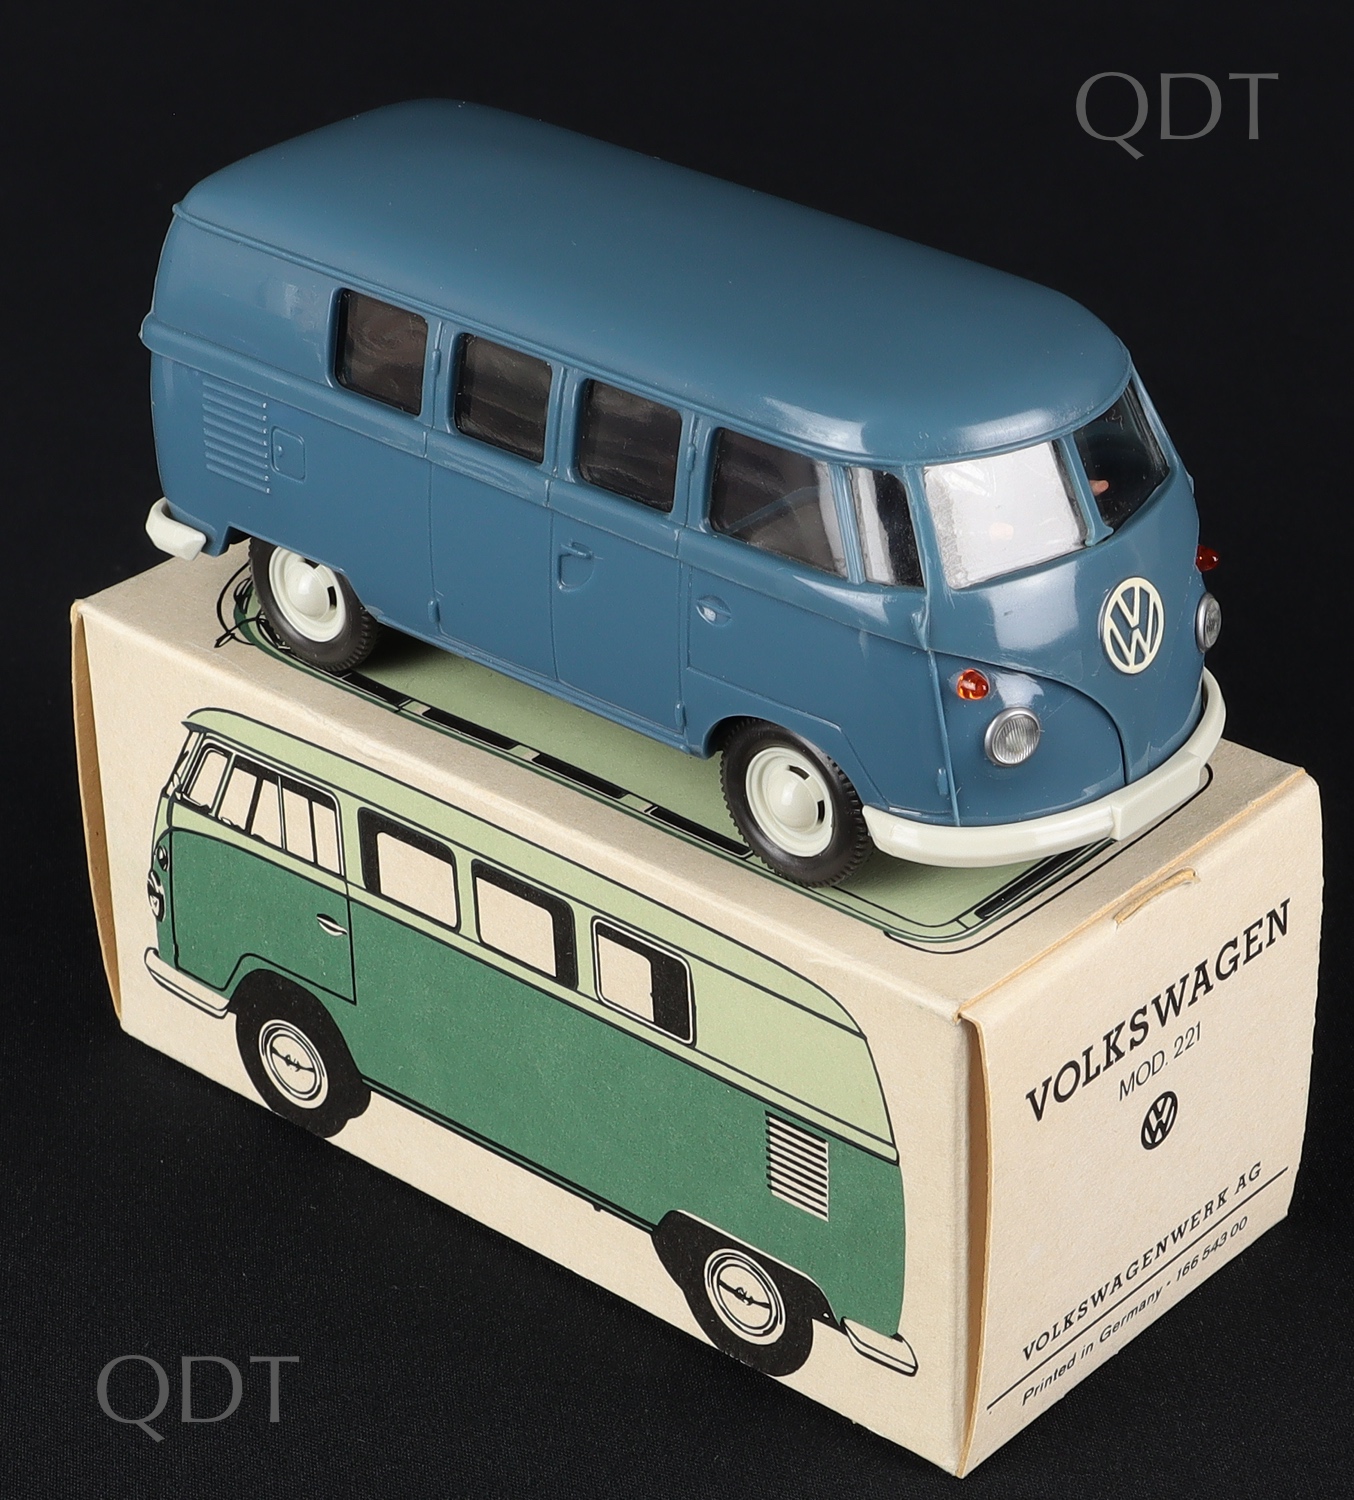 Wiking Models 221 Volkswagen Minibus - QDT